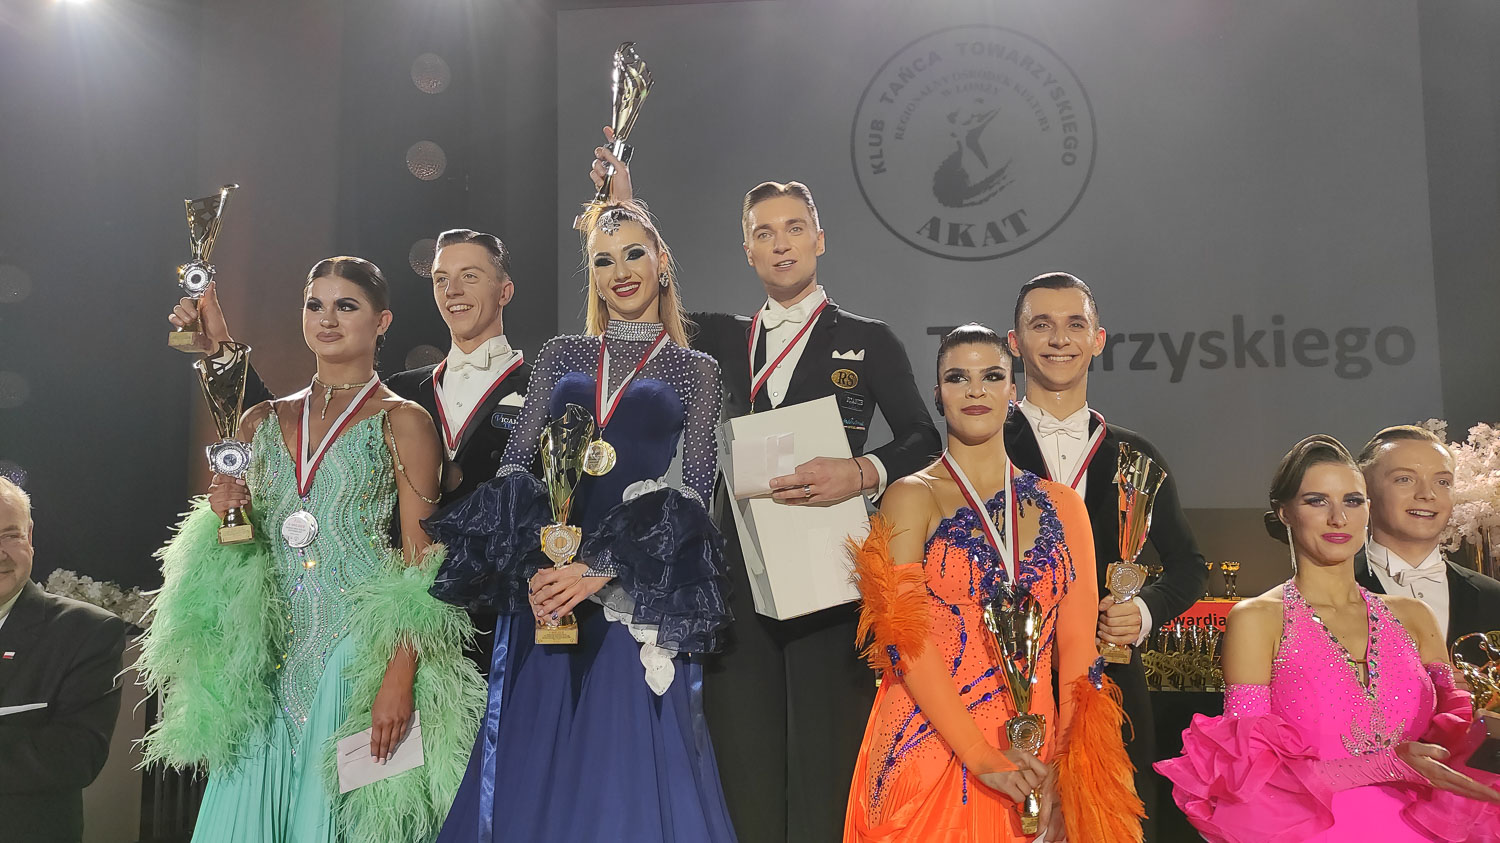 Grand Prix Polski: Agata Brychcy i Bartłomiej Szkutnik, Dance Project Warszawa